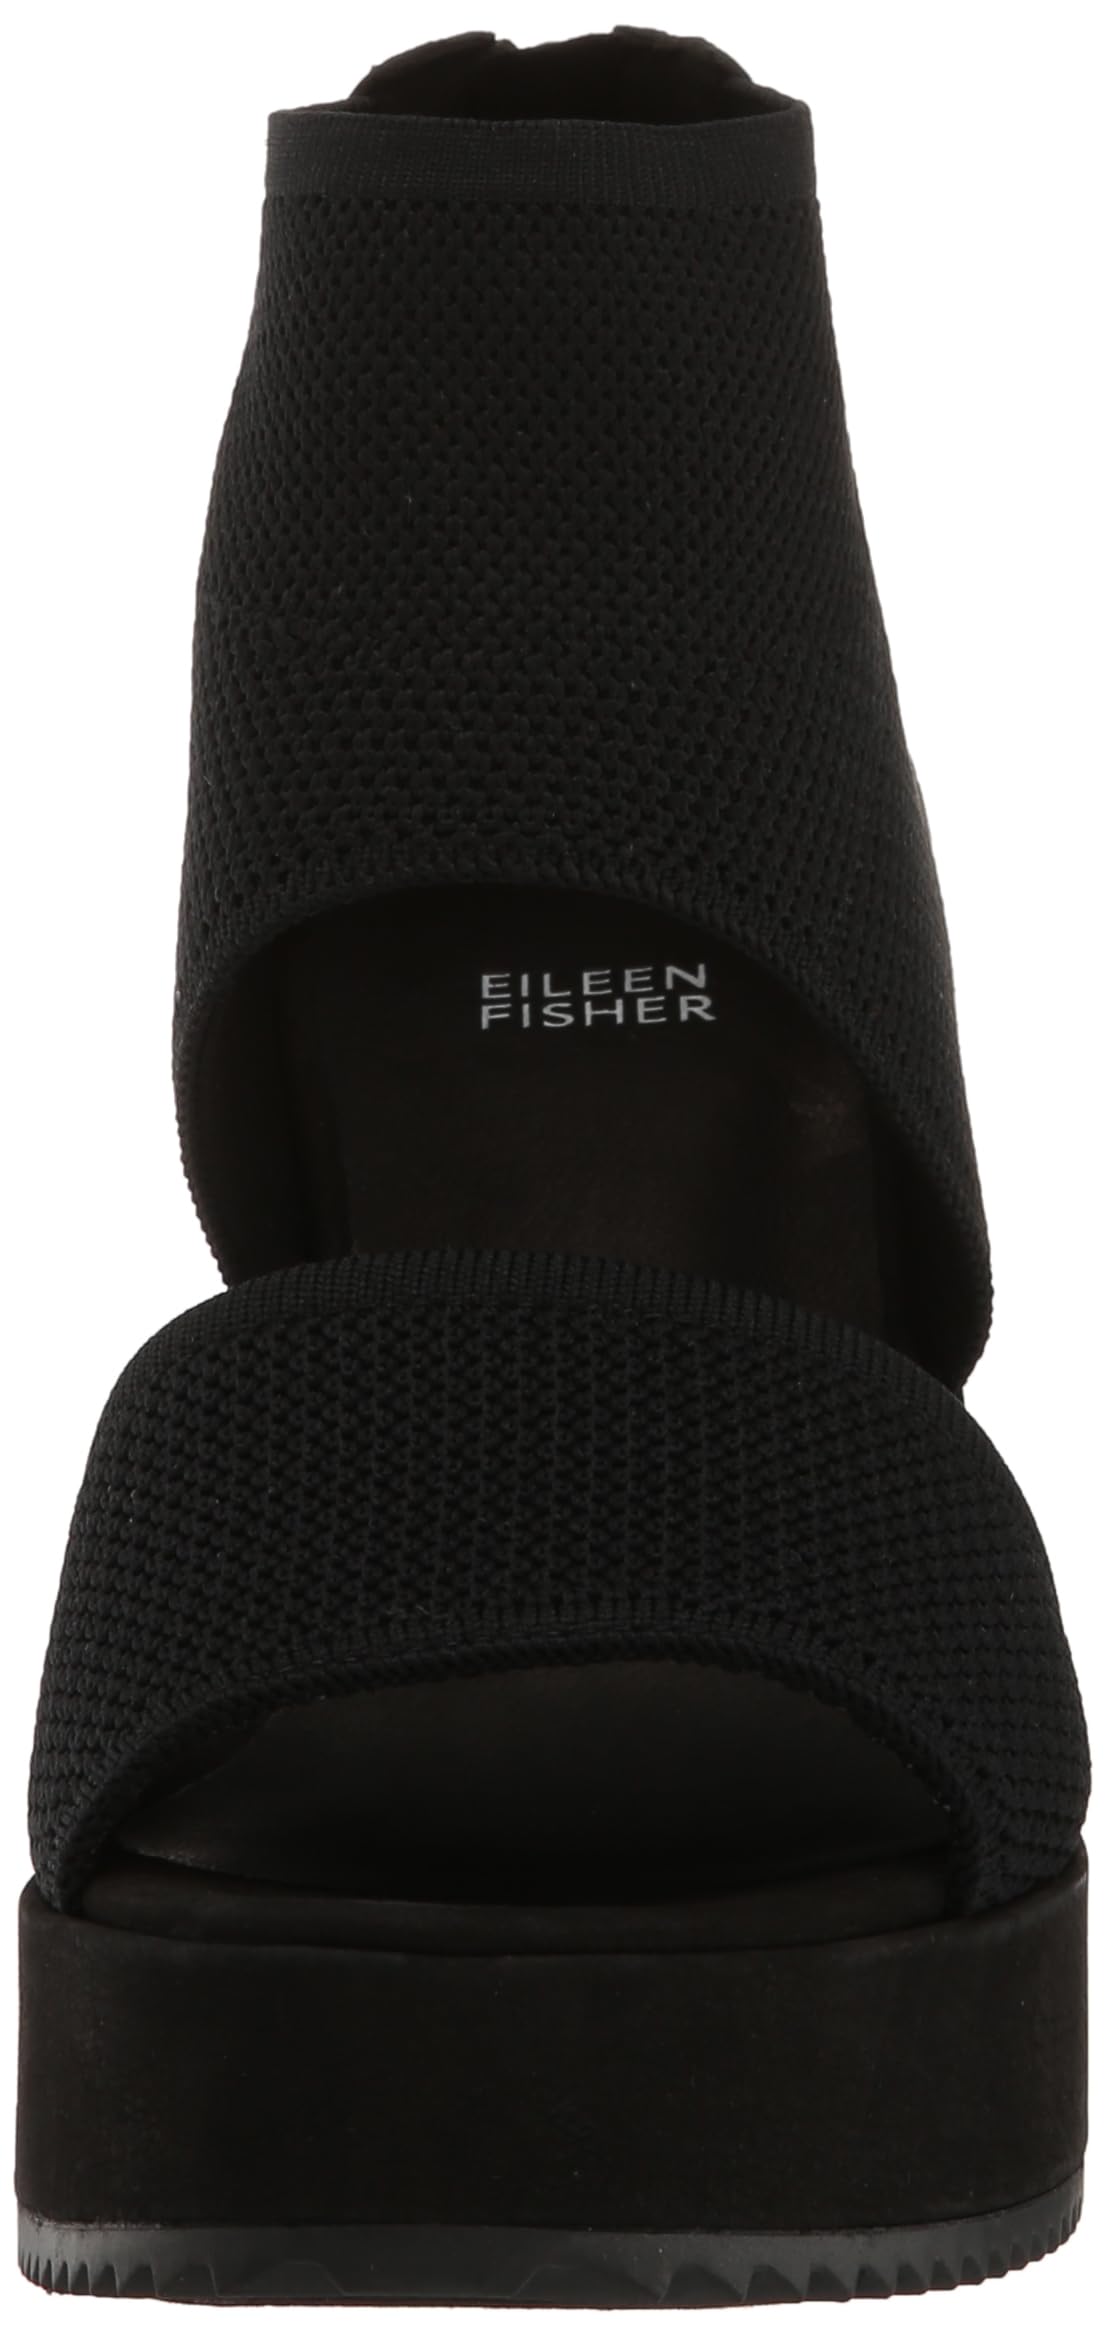 Eileen Fisher Women's Leto Wedge Sandal